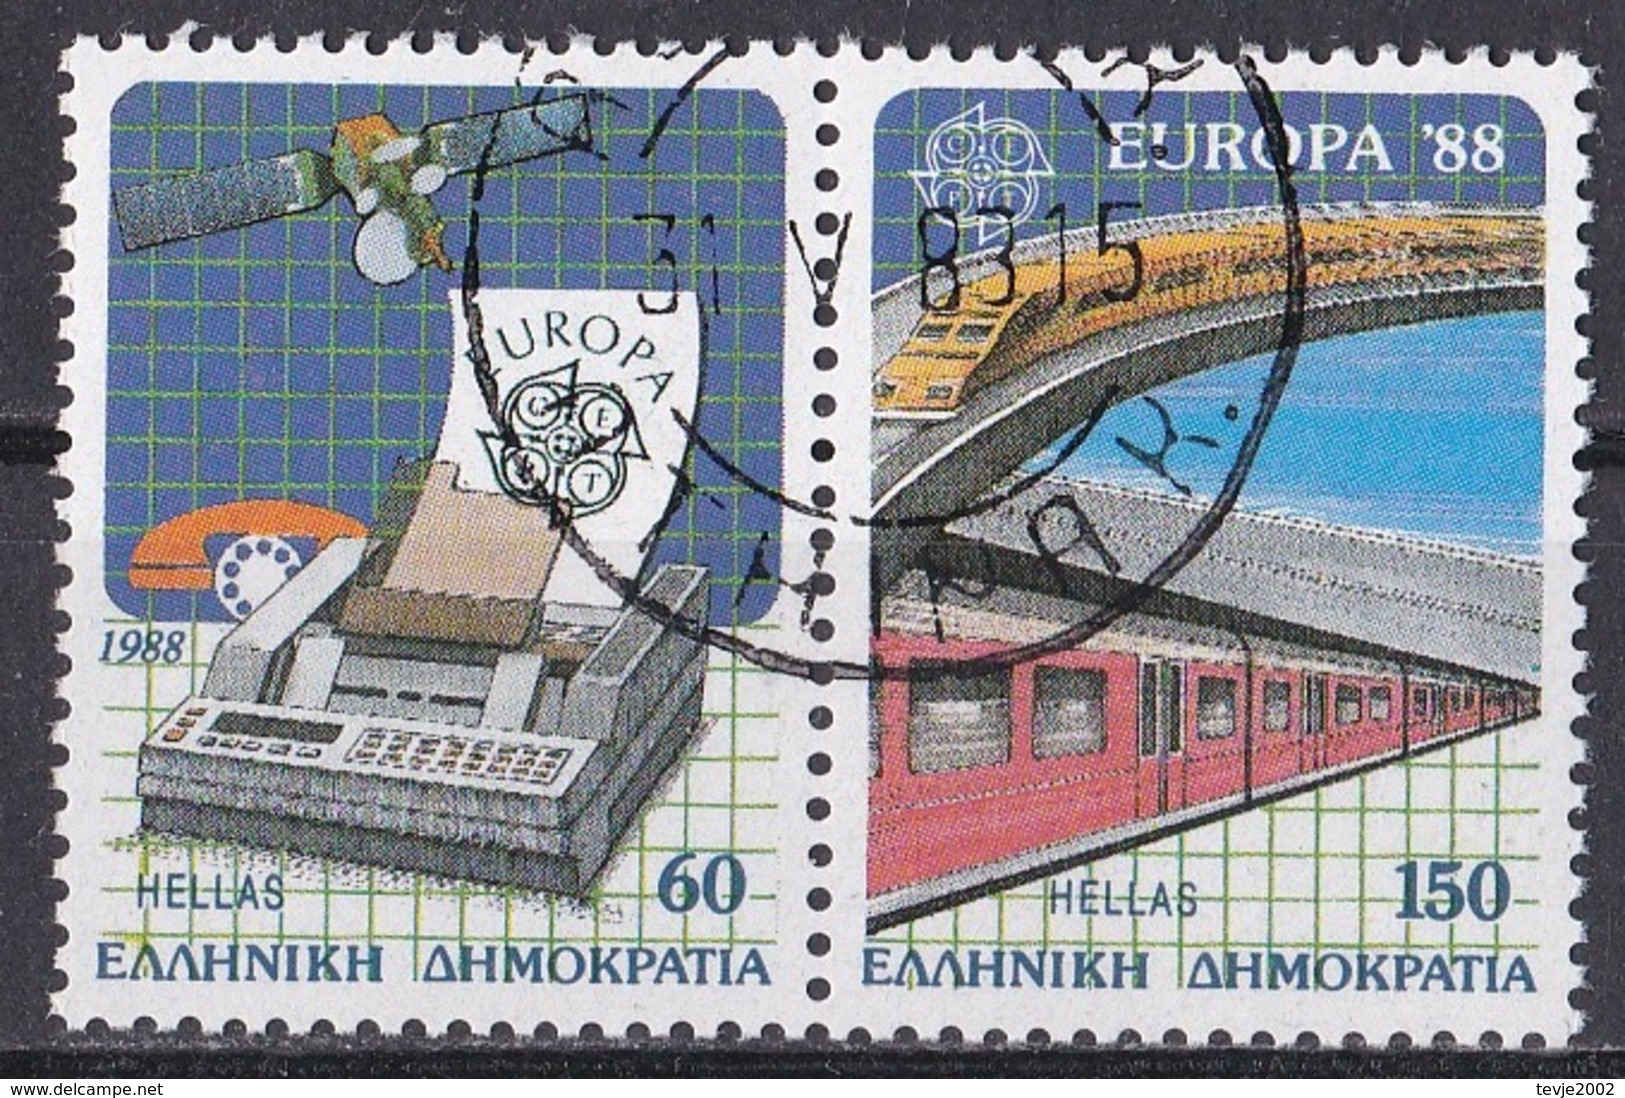 Ei_ Griechenland 1988 - Mi.Nr. 1685 - 1686 A - Gestempelt Used - Europa CEPT - Gebraucht